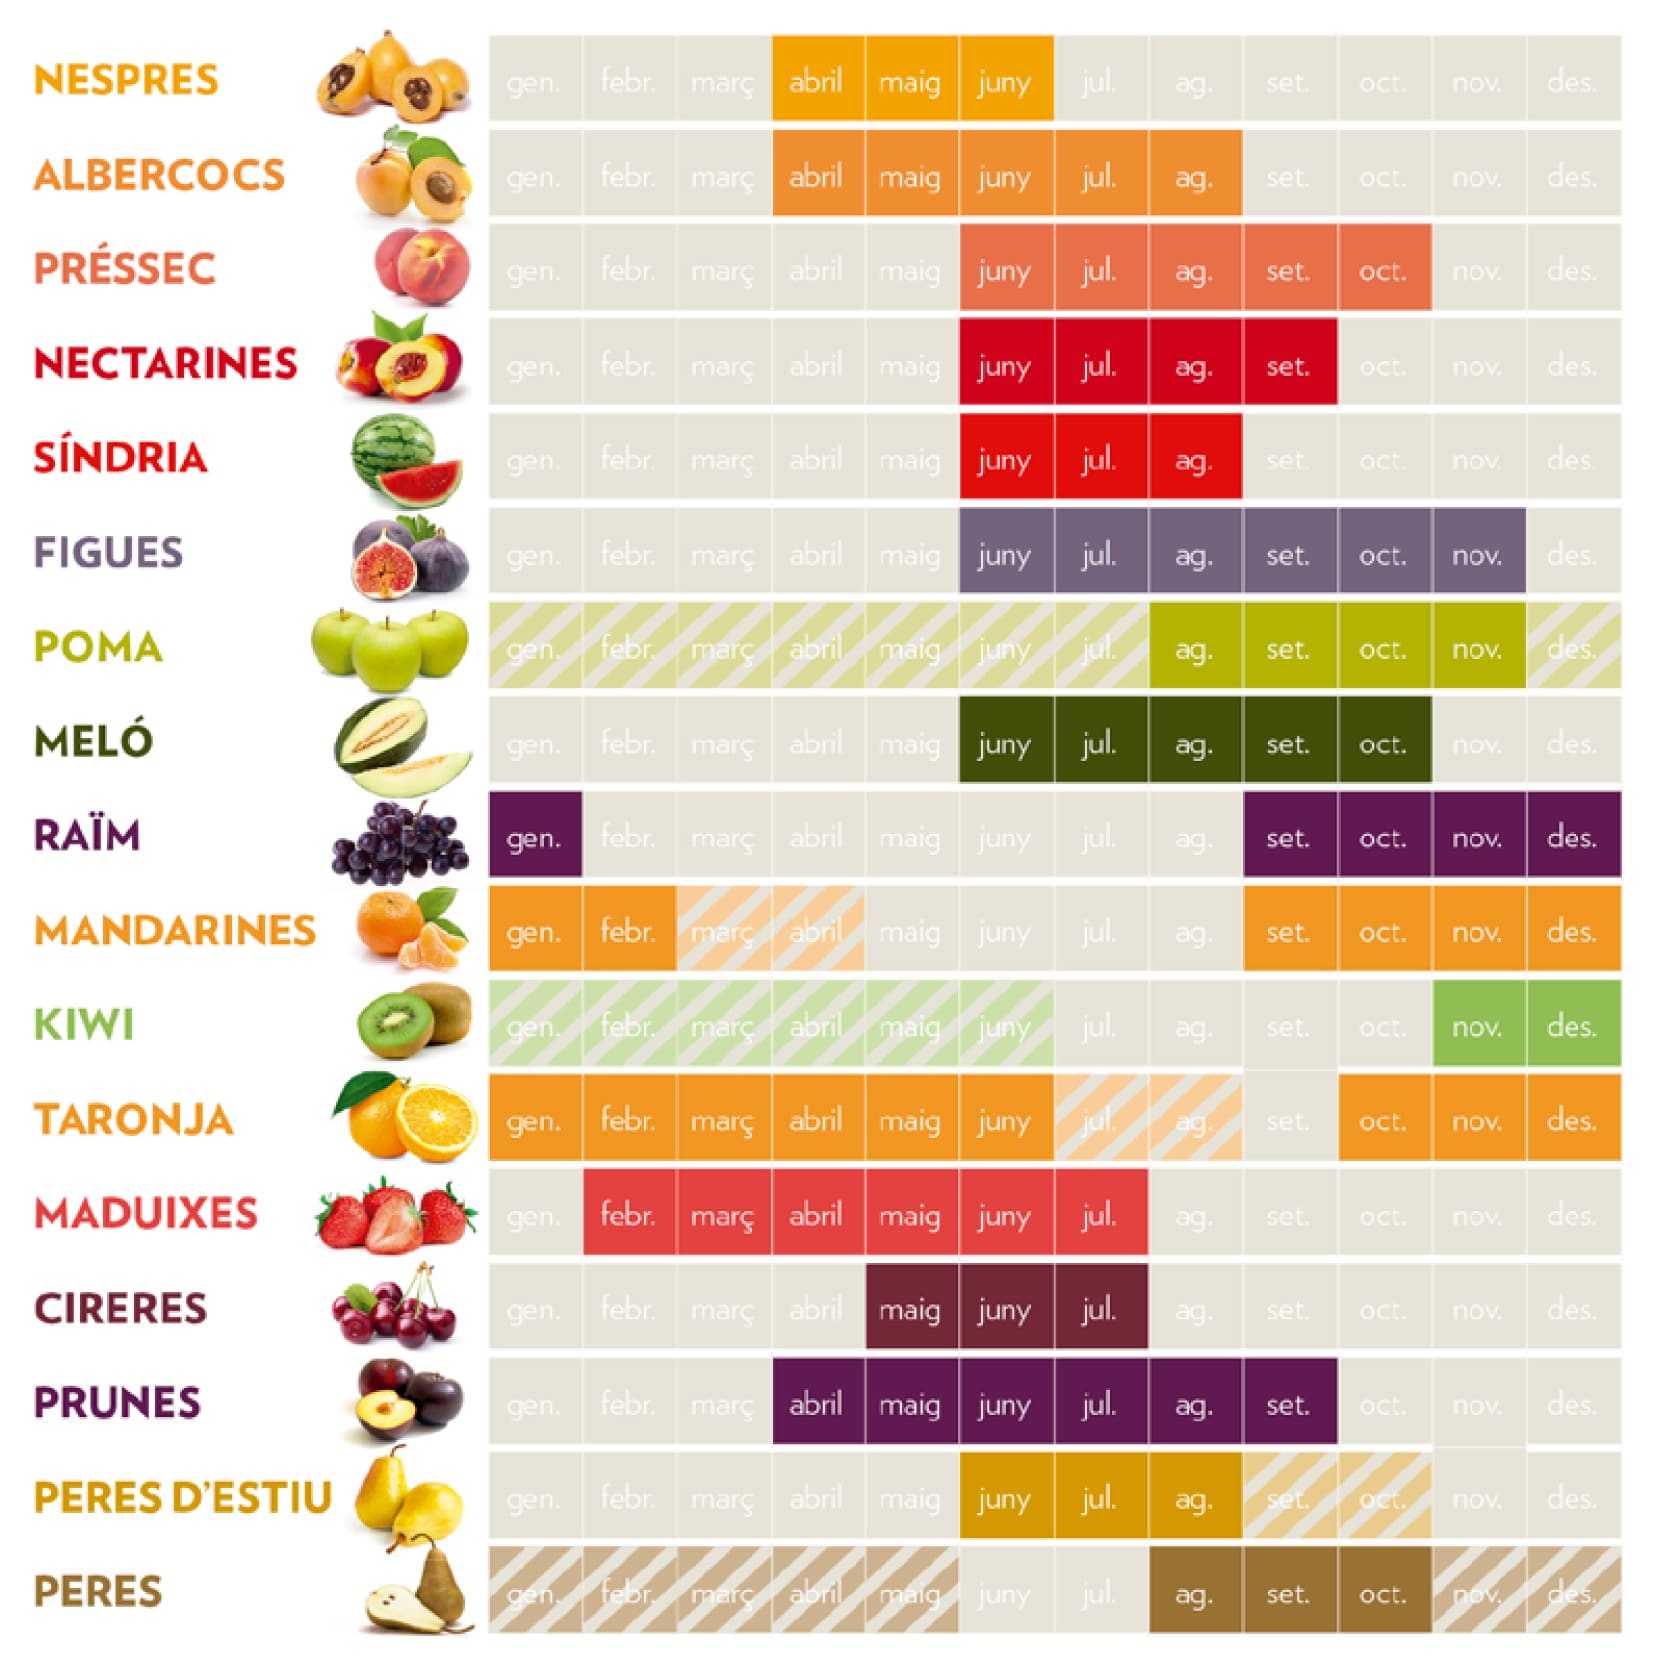 Distribució per mesos de les diferents fruites